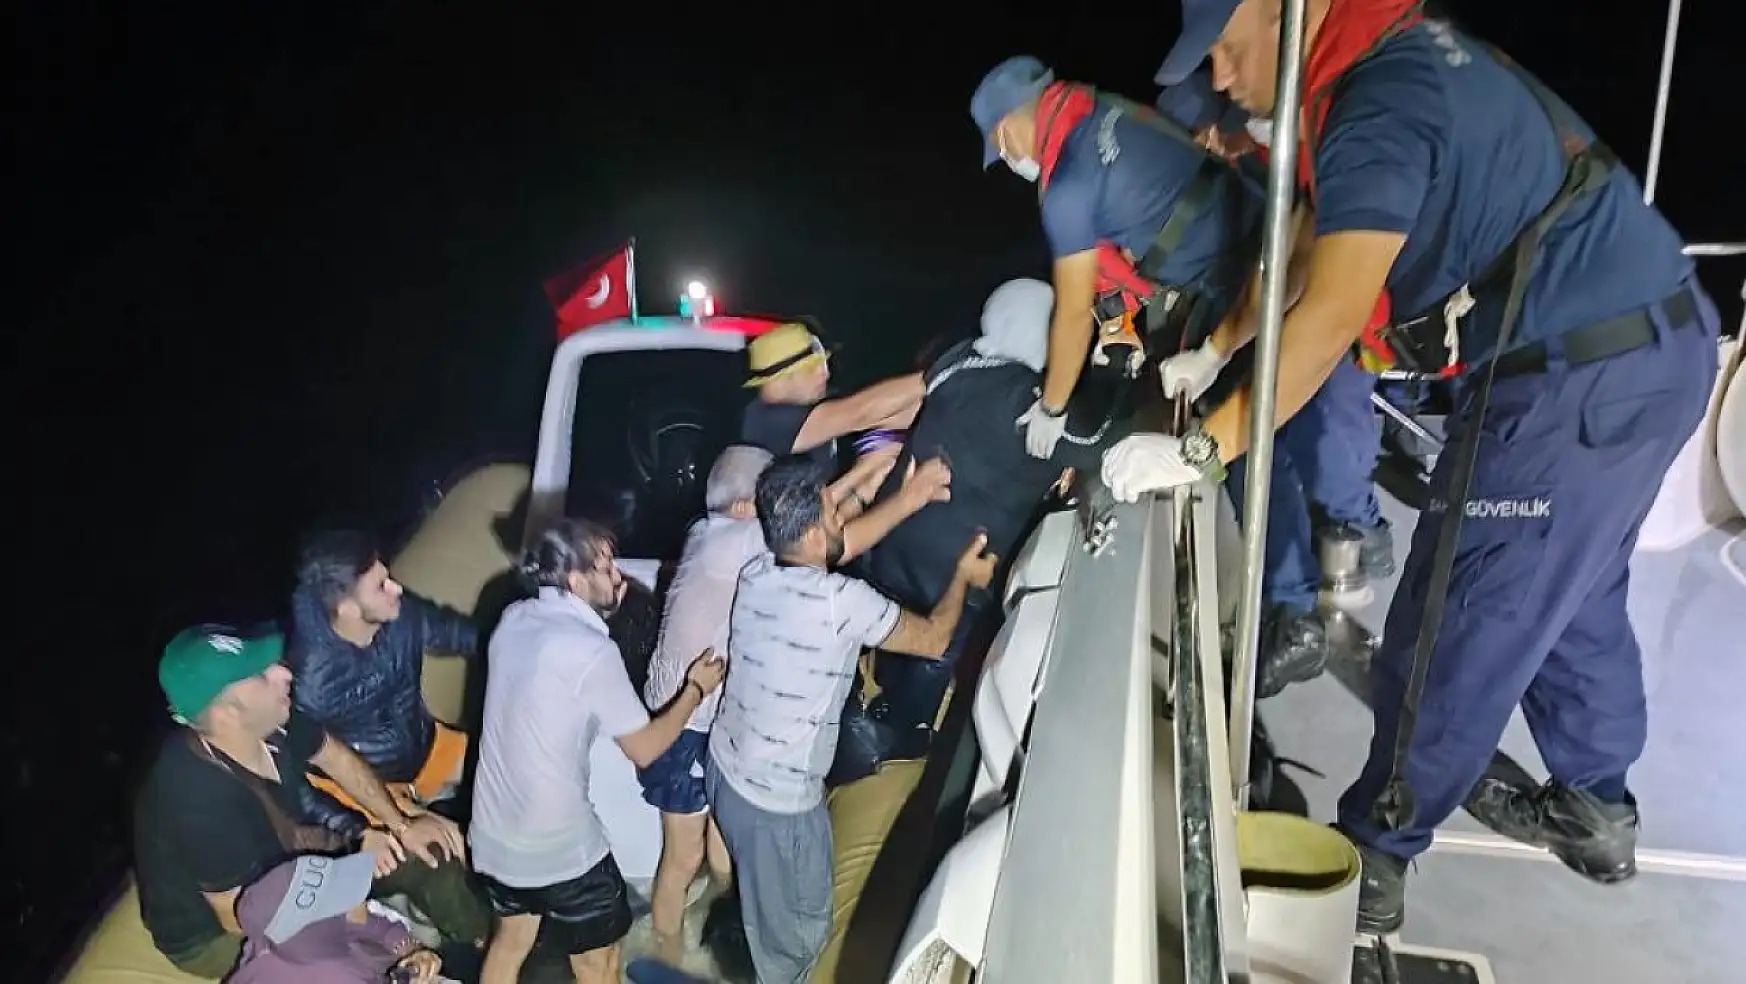 Göçmenler bot arızalınca yardım istedi